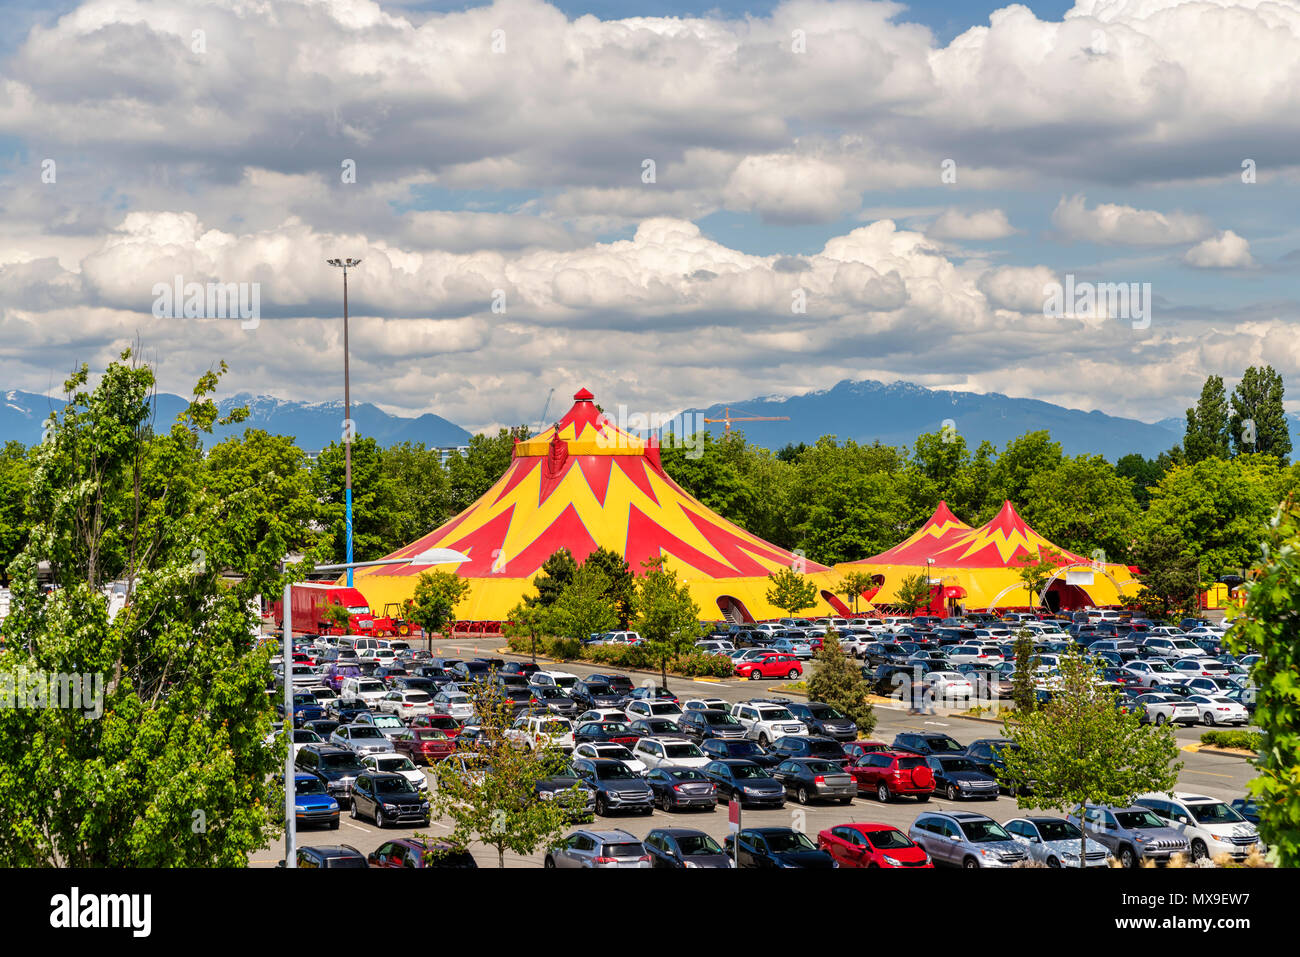 Un cirque mobile dans la ville, les arbres verts et les montagnes au loin, les voitures dans un parking, d'un ciel bleu avec des nuages denses sur un jour d'été Banque D'Images